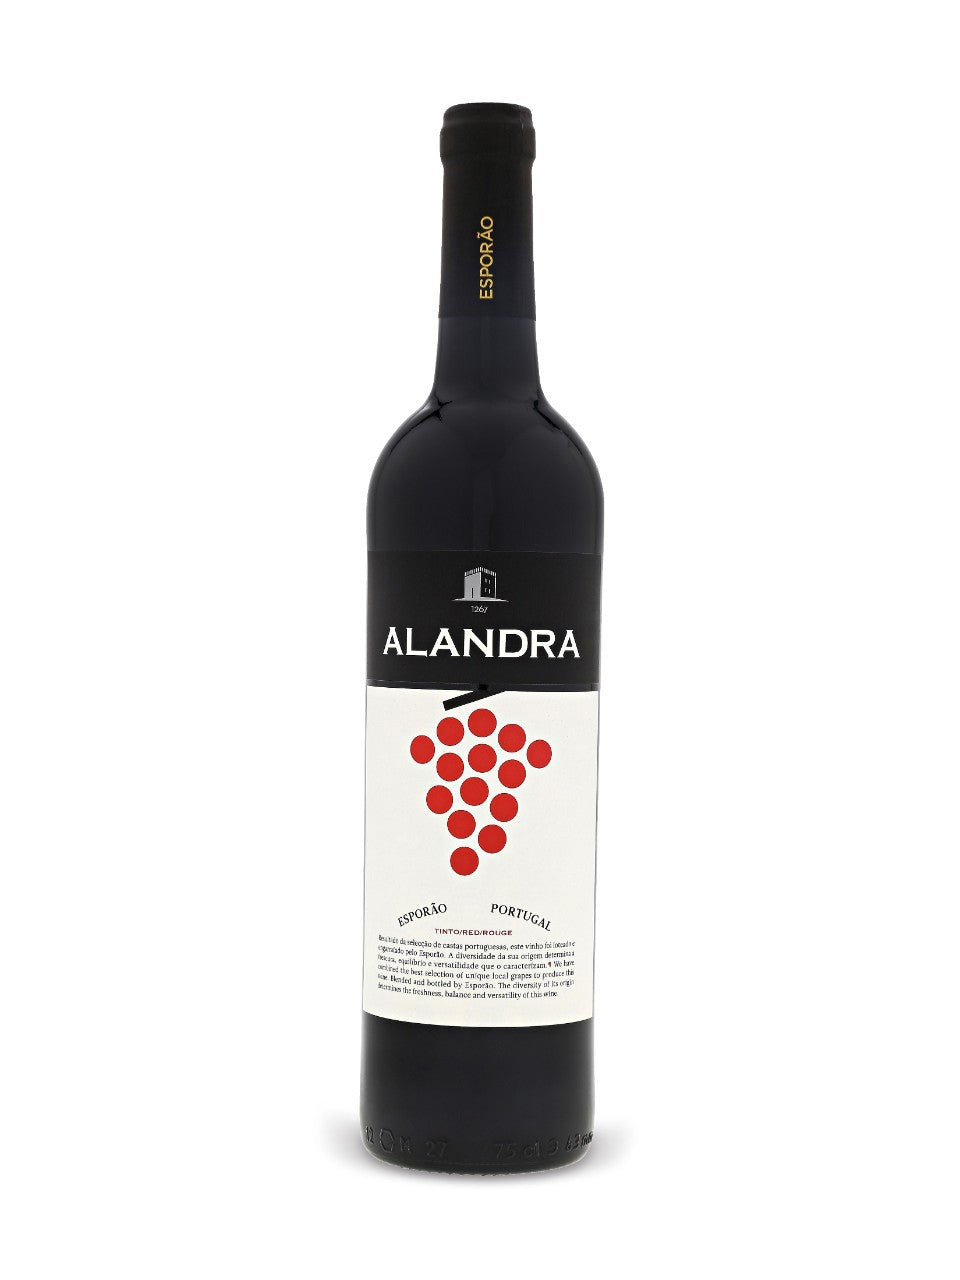 Finagra Alandra Red Alentejo 750 ml bottle